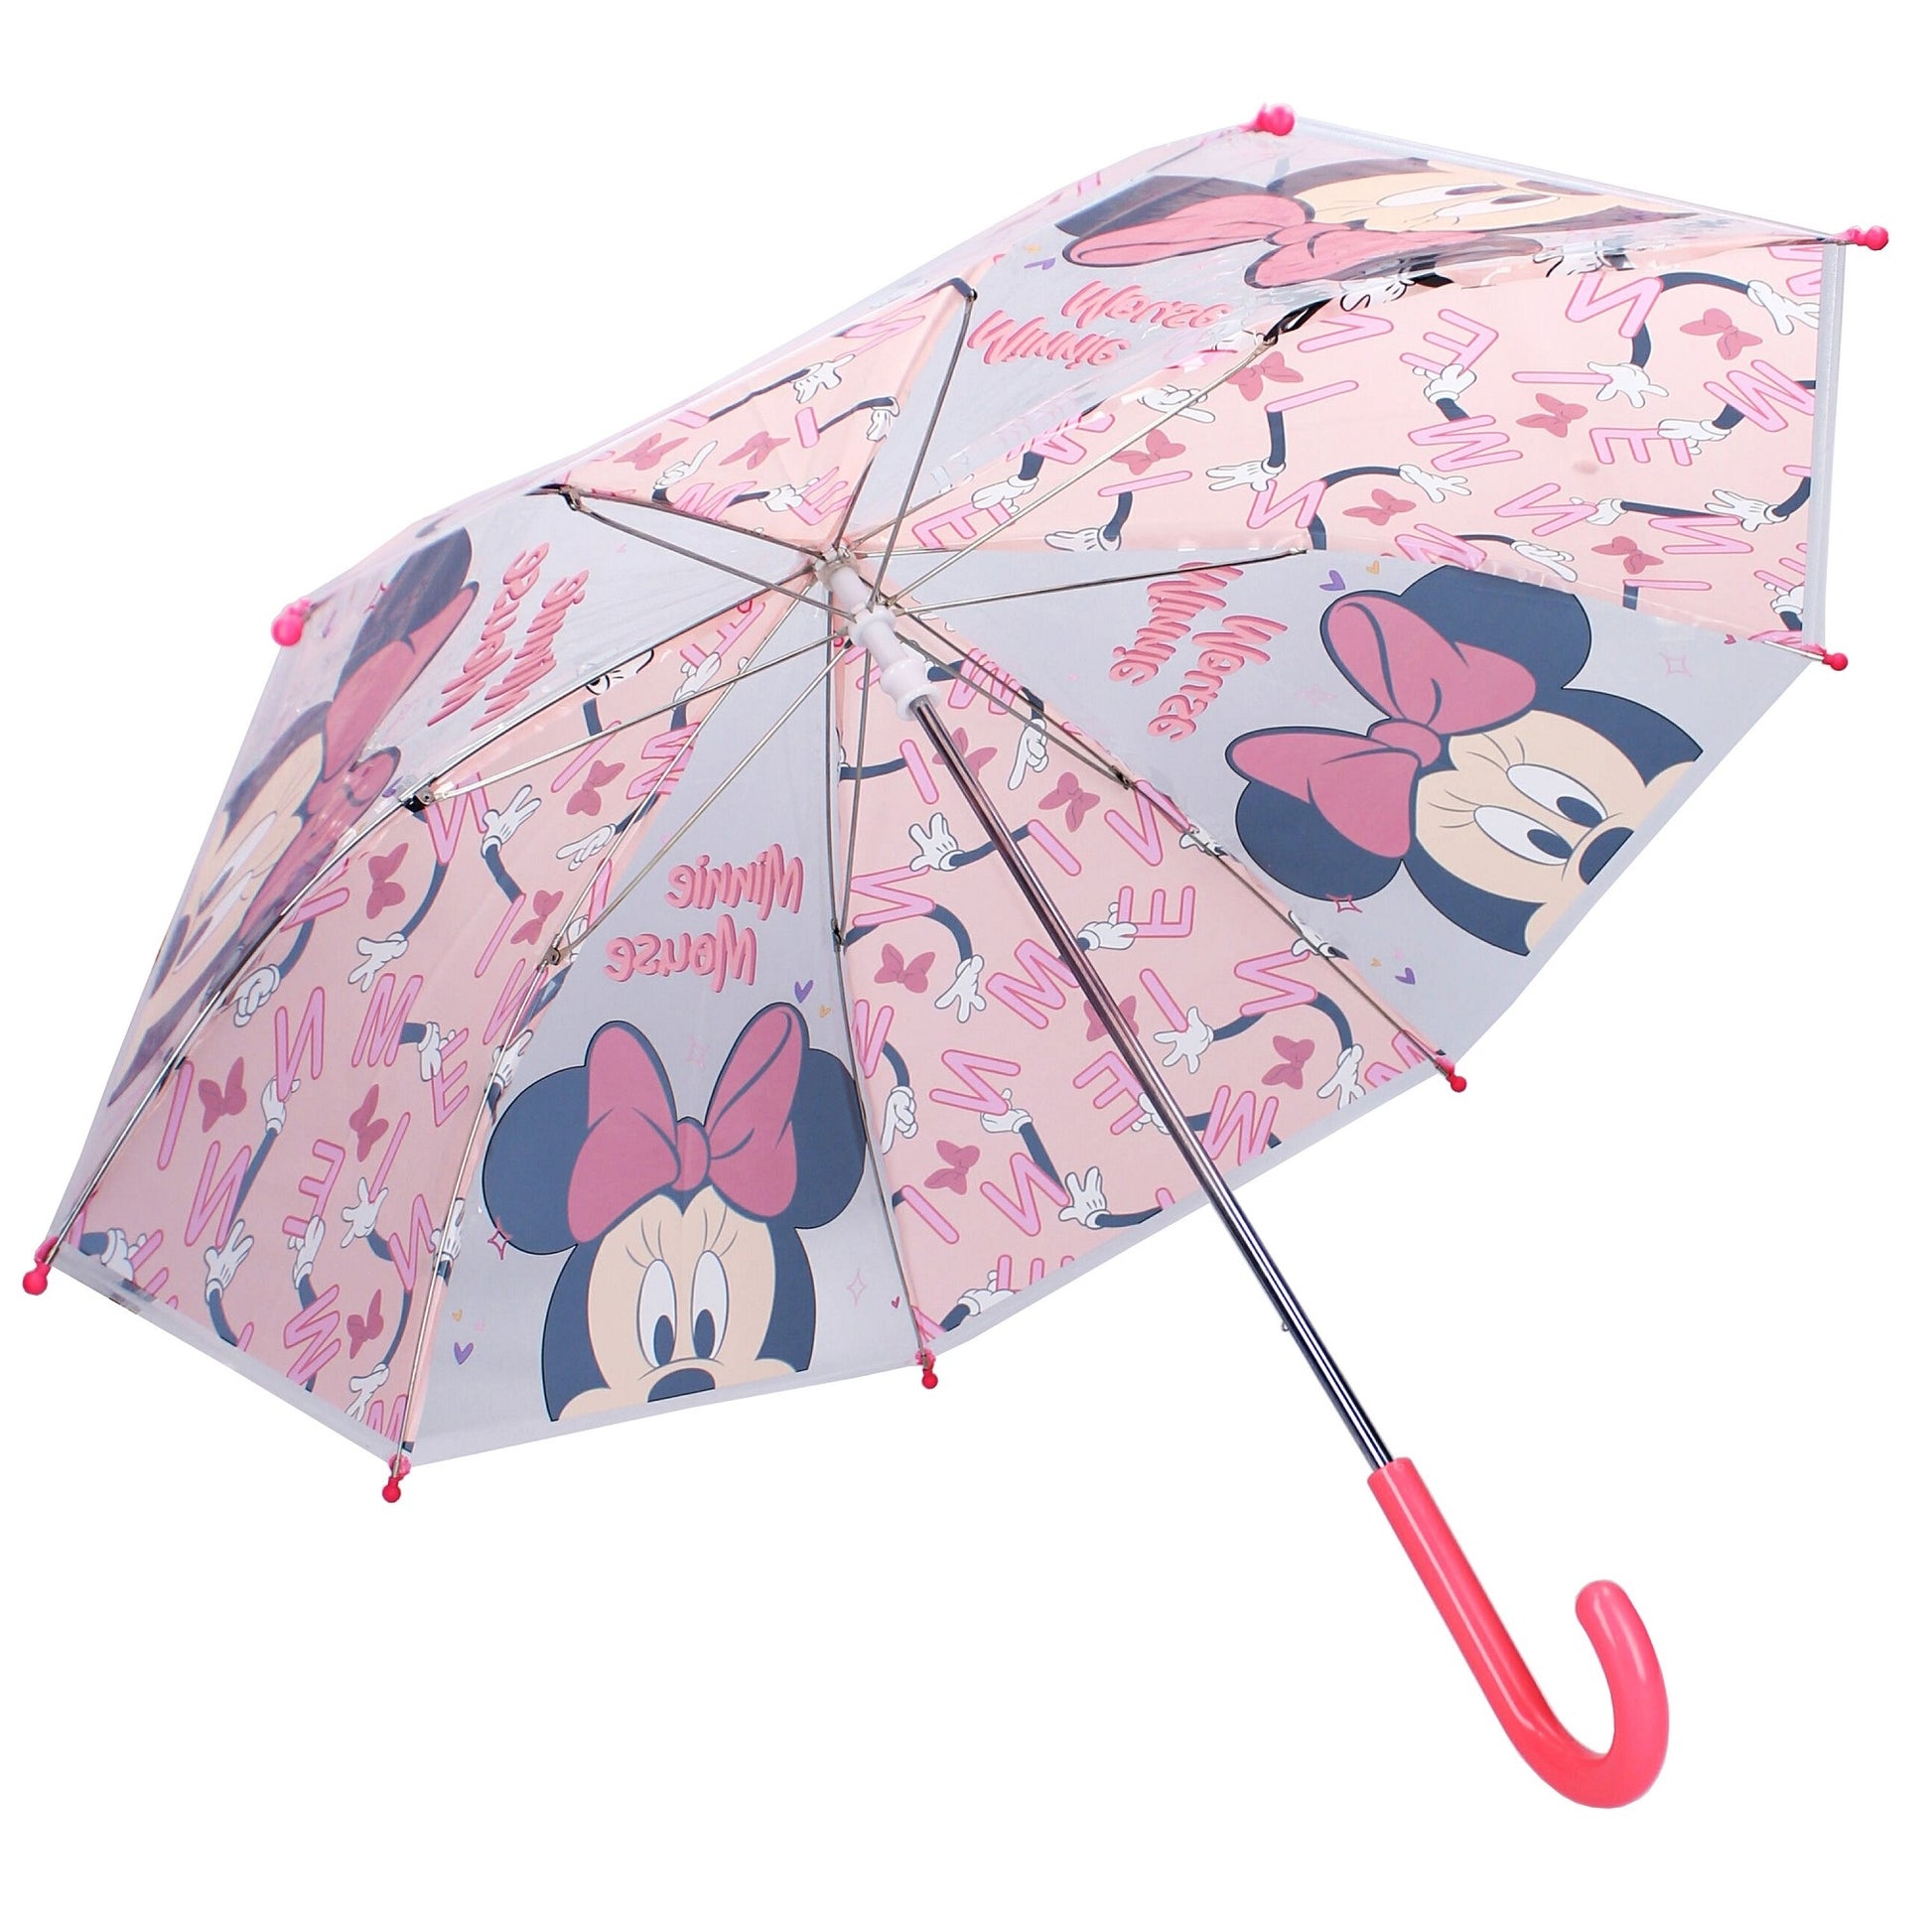 Voeg wat plezier toe aan regenachtige dagen met deze vrolijke Minnie Mouse paraplu, compleet met een gevarieerde print en kleine dopjes aan de uiteinden van de ribben voor extra veiligheid.